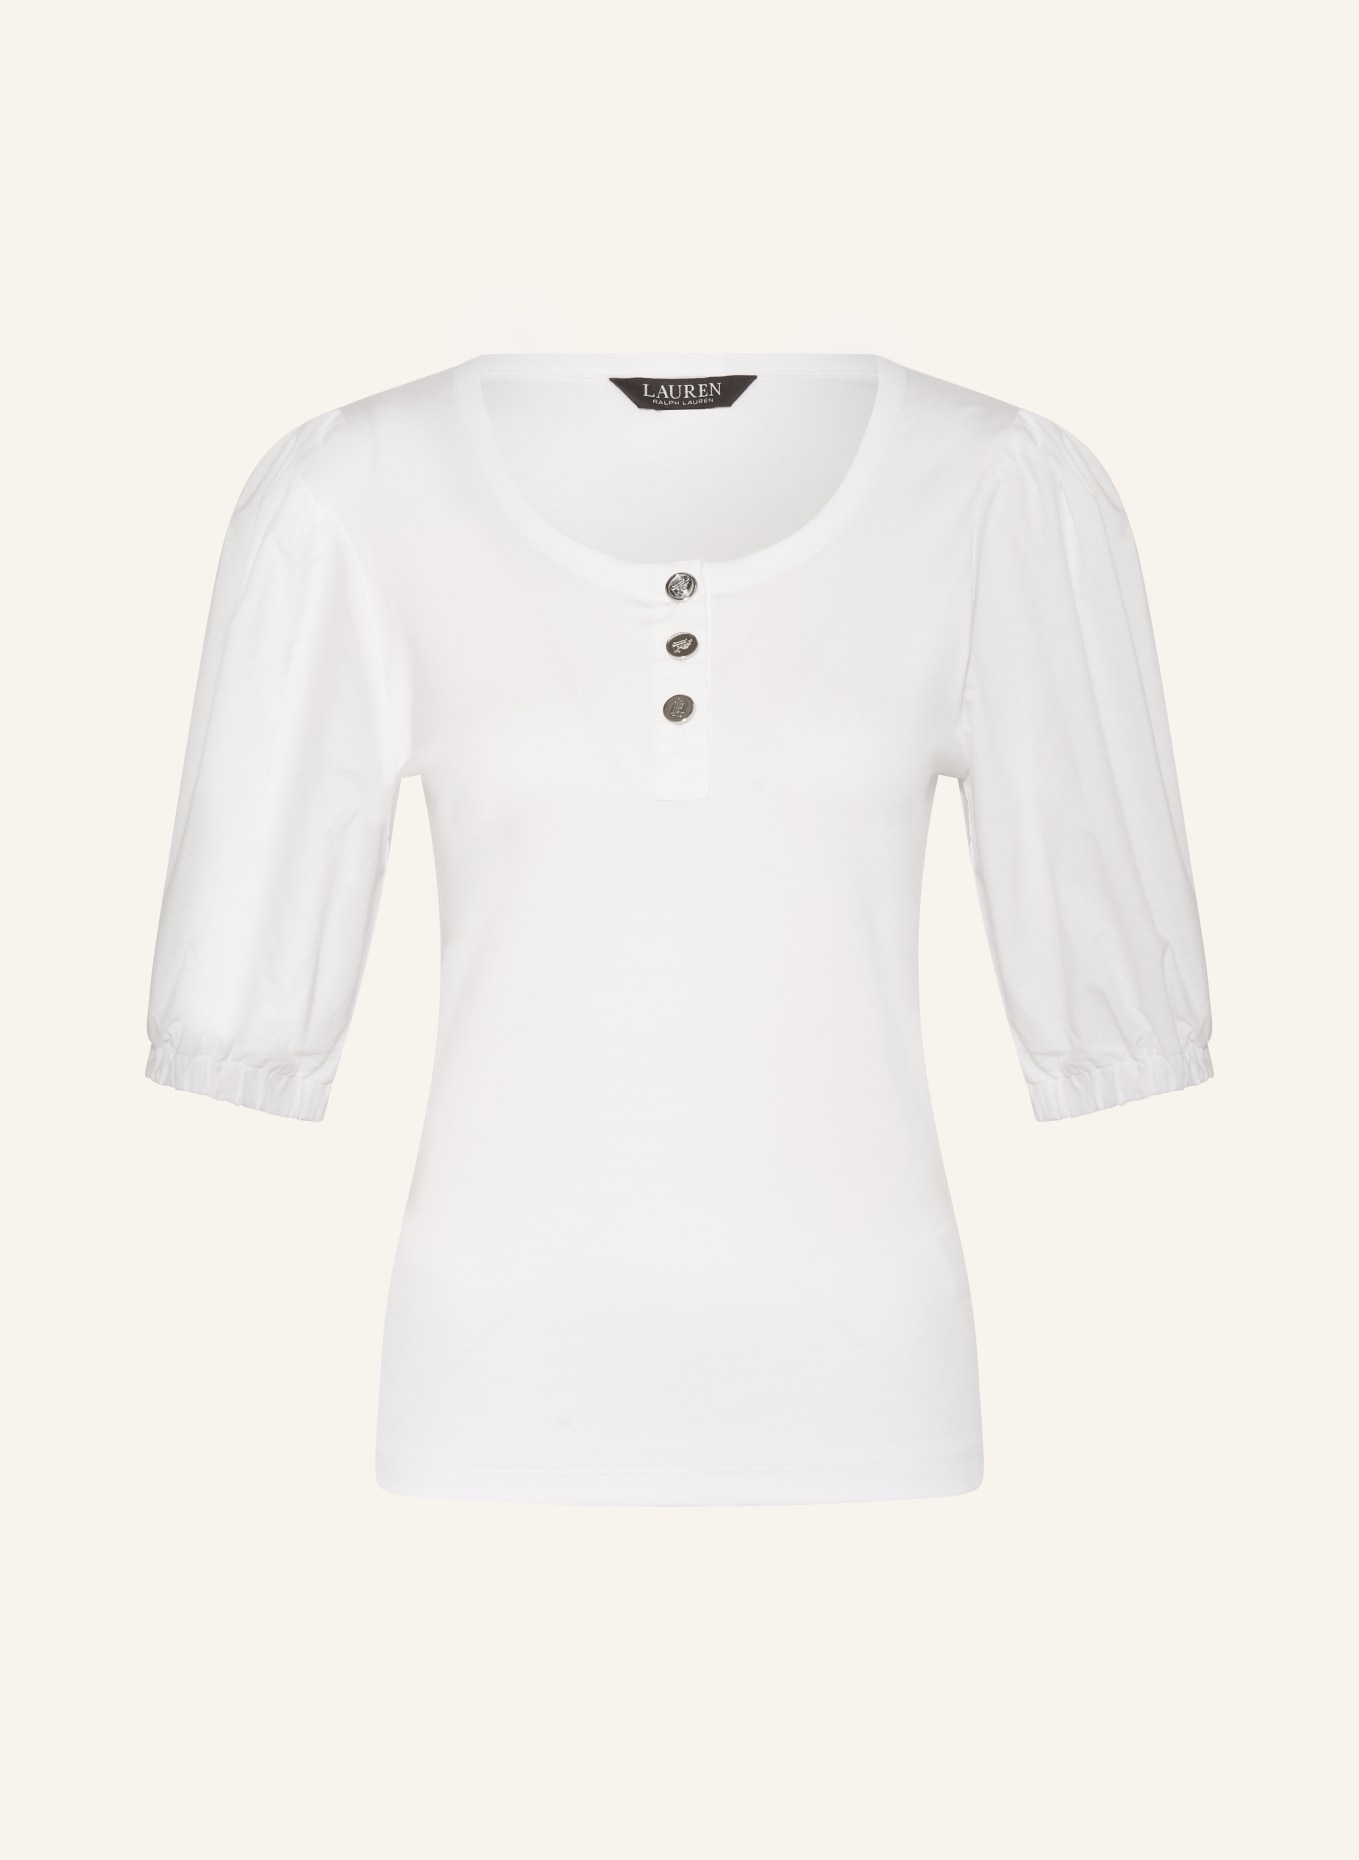 LAUREN RALPH LAUREN T-shirt in mixed materials, Color: WHITE (Image 1)